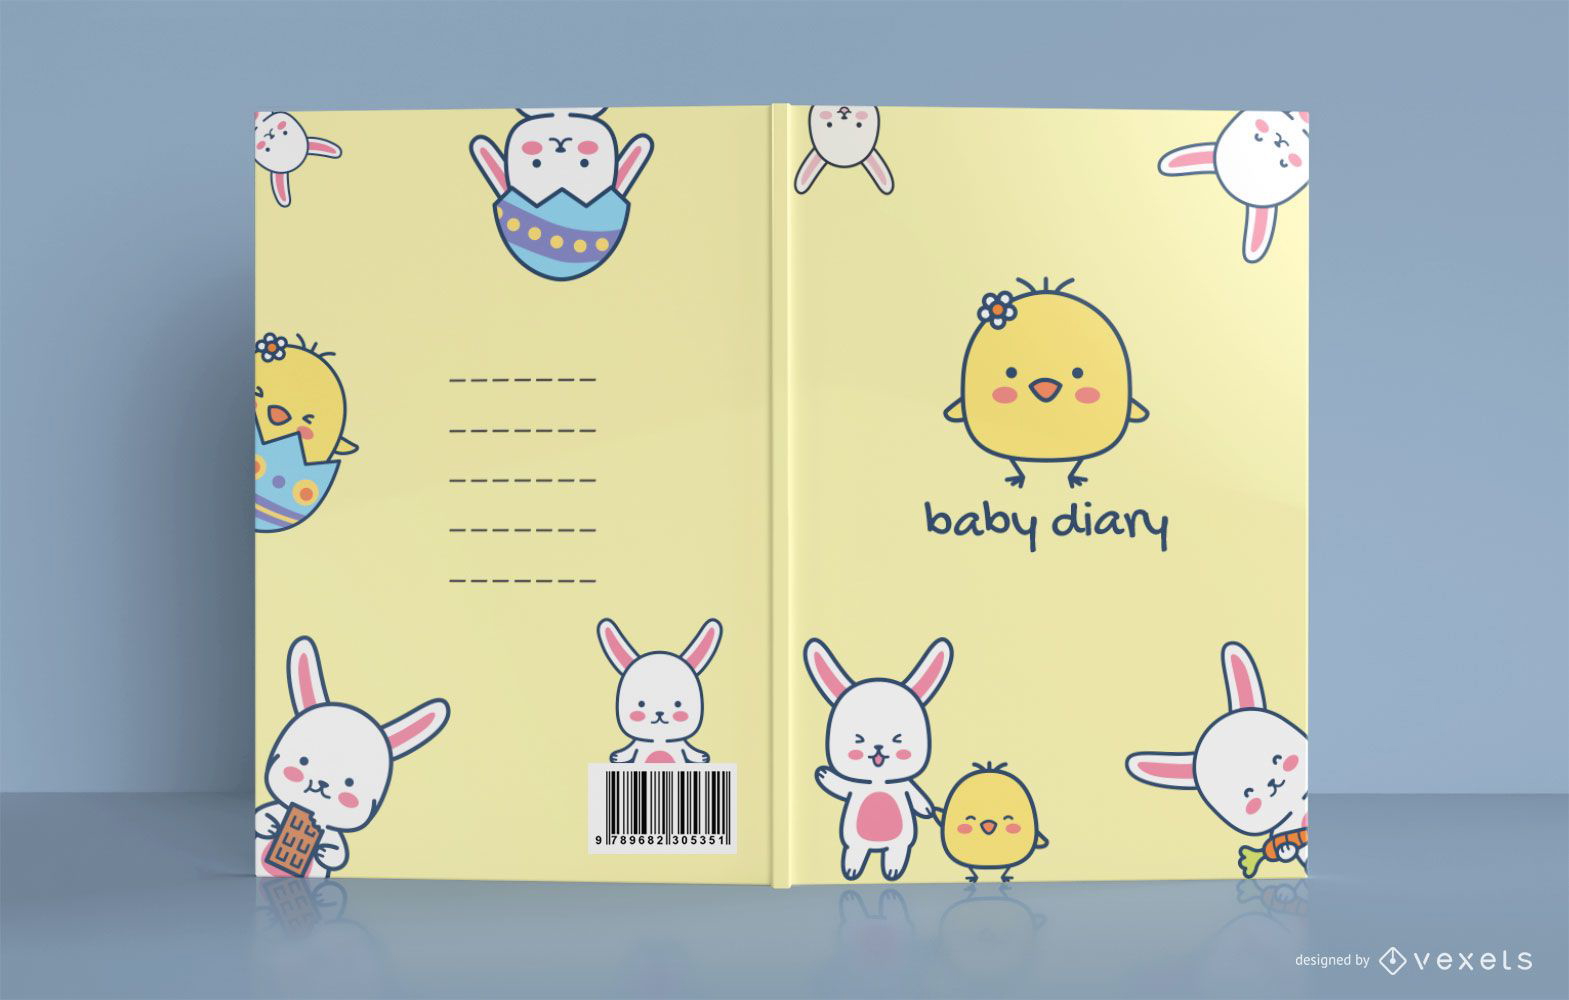 Design bonito da capa do livro do diário do bebê da galinha